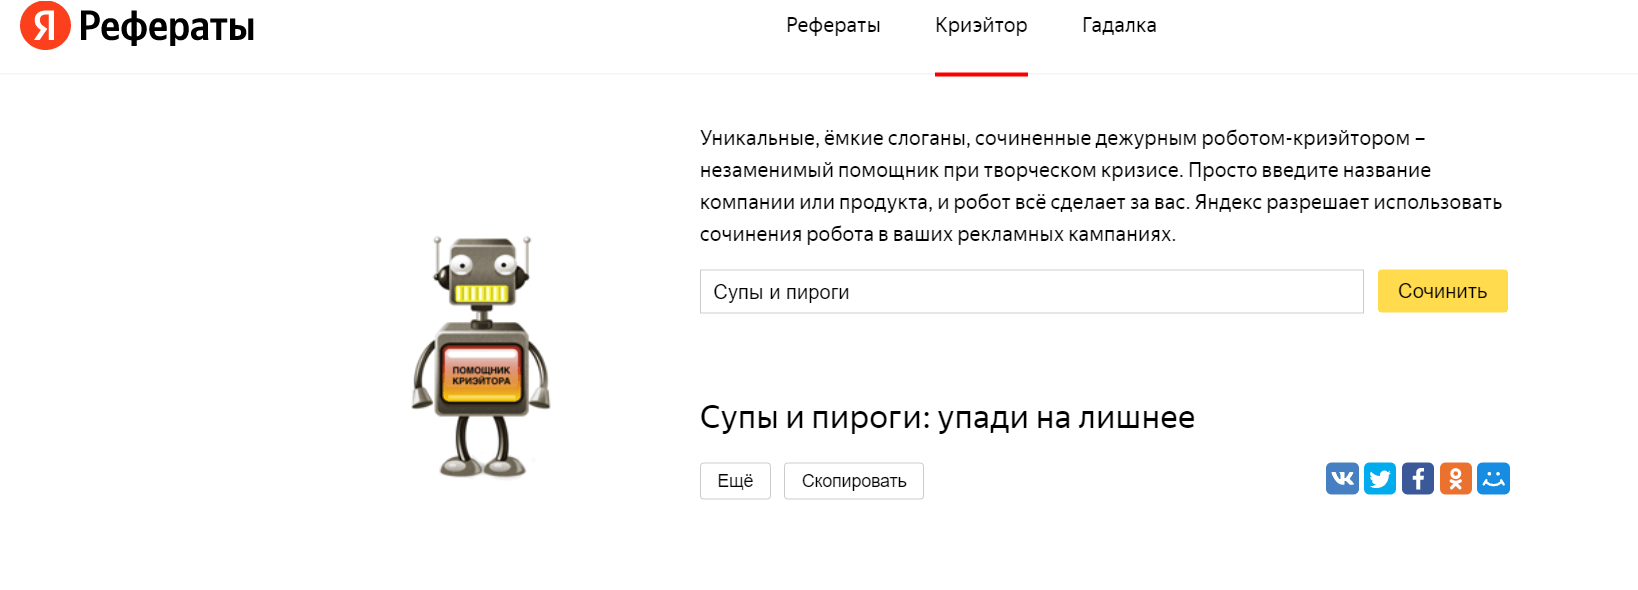 Яндекс.Реферат, слоган криэейтора, пример 1